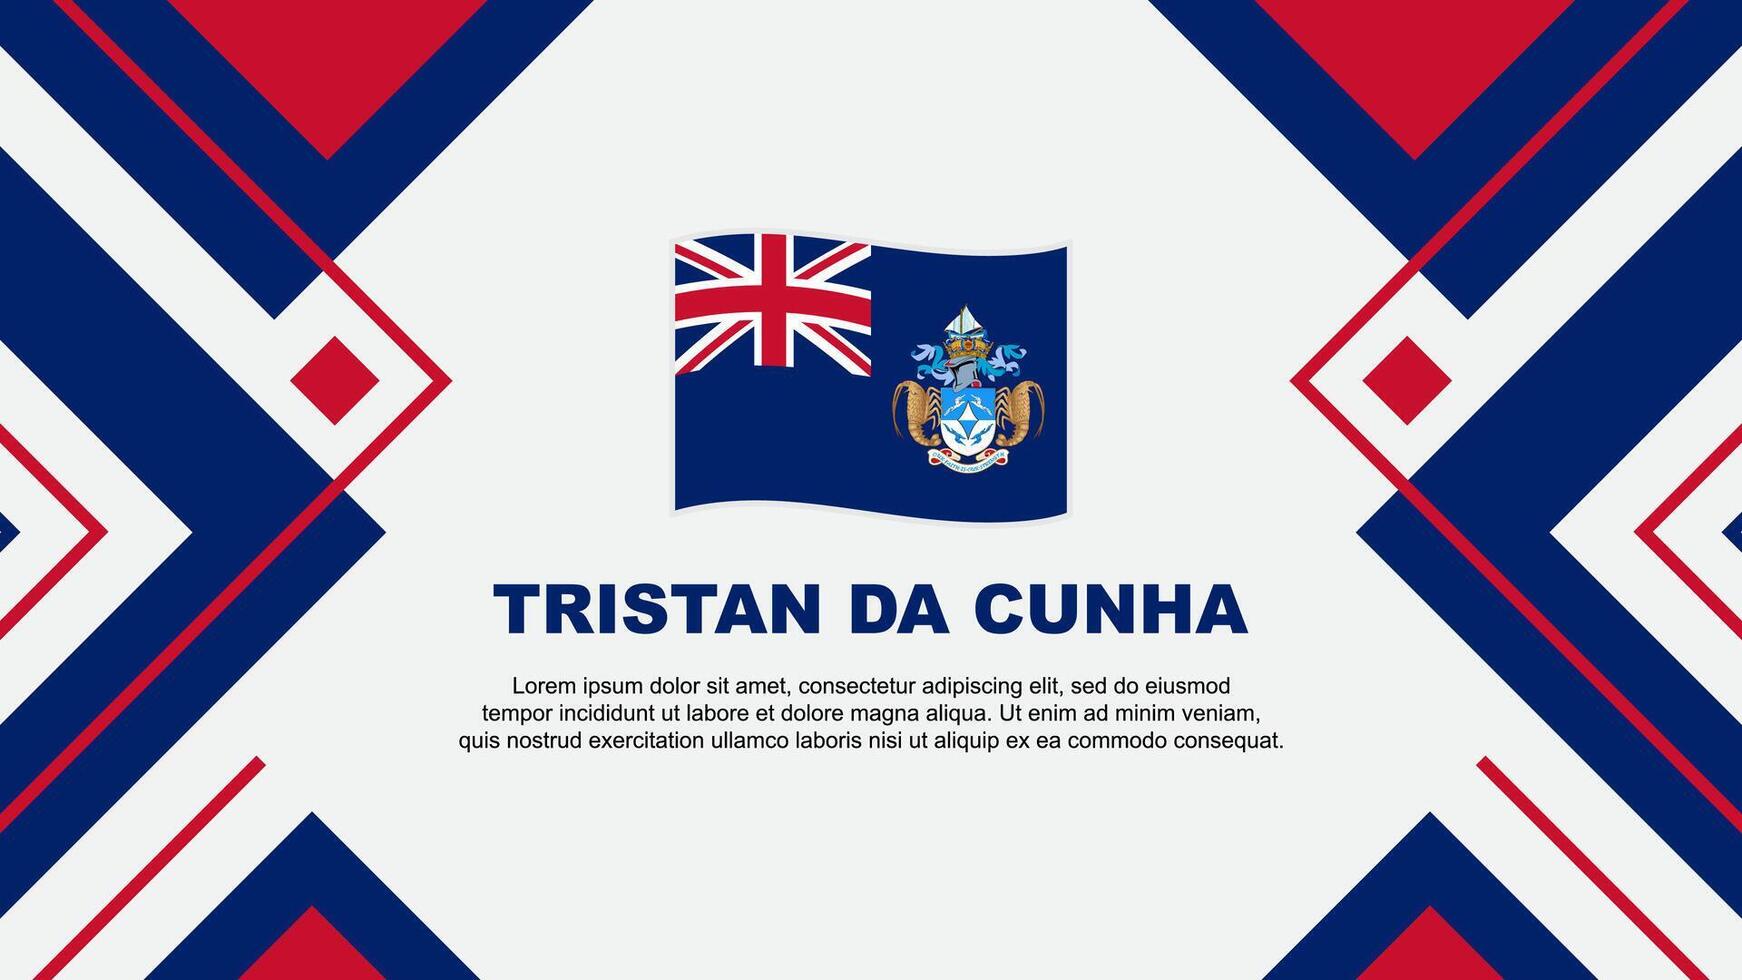 Tristan Da Cunha Flag Abstract Background Design Template. Tristan Da Cunha Independence Day Banner Wallpaper Vector Illustration. Tristan Da Cunha Illustration